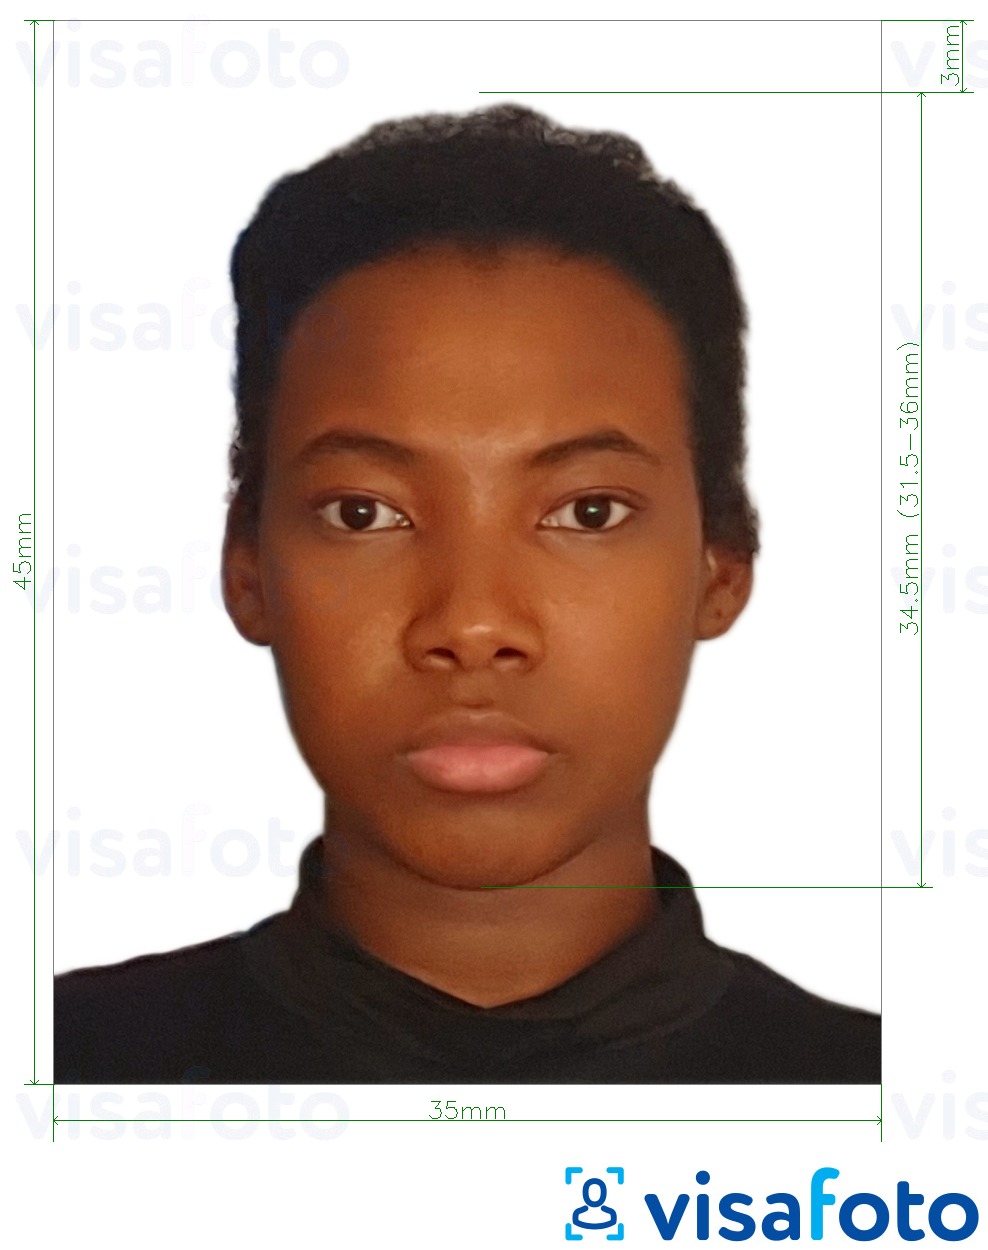 Przykład zdjęcia dla Paszport liberyjski 35x45 mm (3,5x4,5 cm) z podaniem dokładnego rozmiaru.